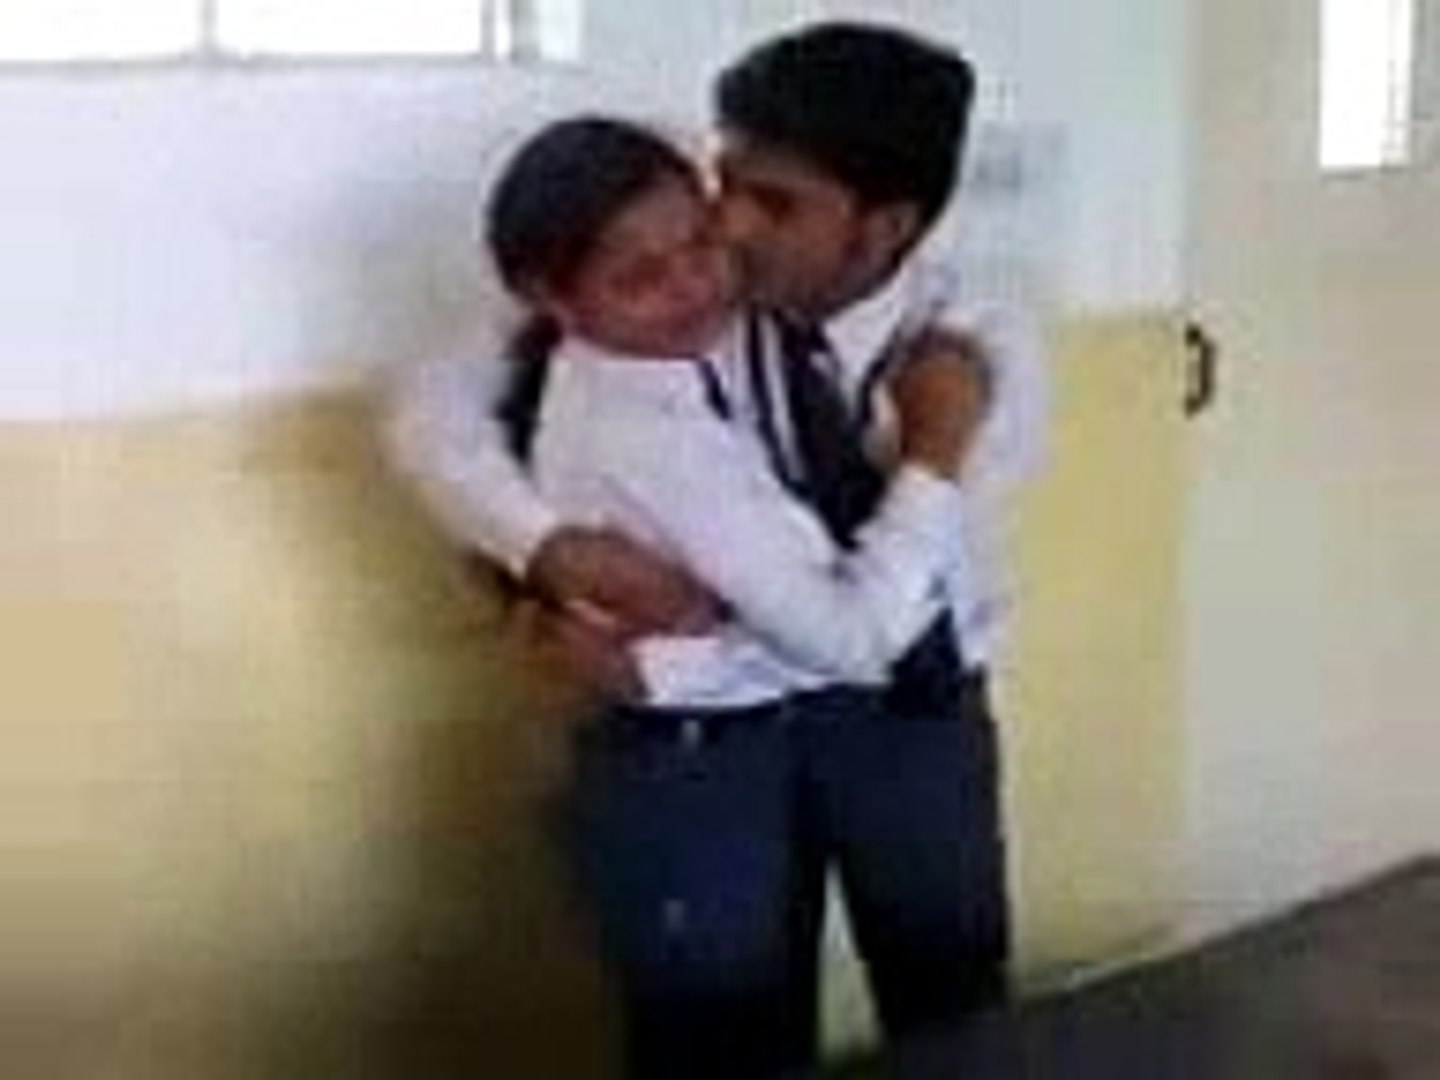 Schoolgirl Kissing